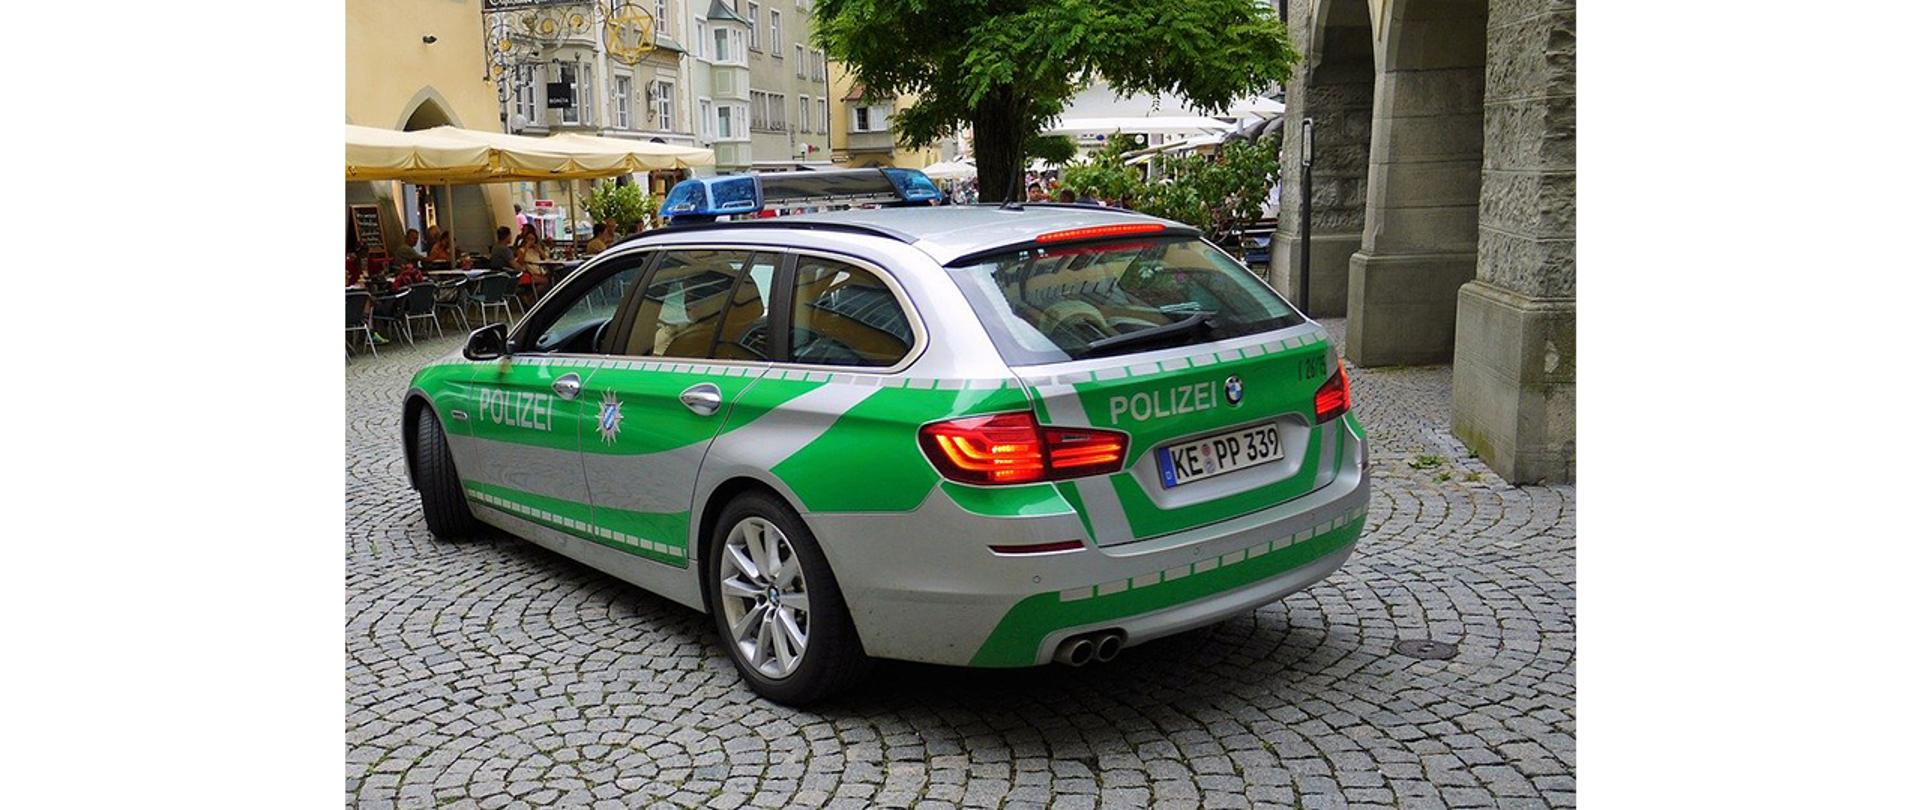 Na zdjęciu: radiowóz niemieckiej Policji stojący na brukowanej ulicy